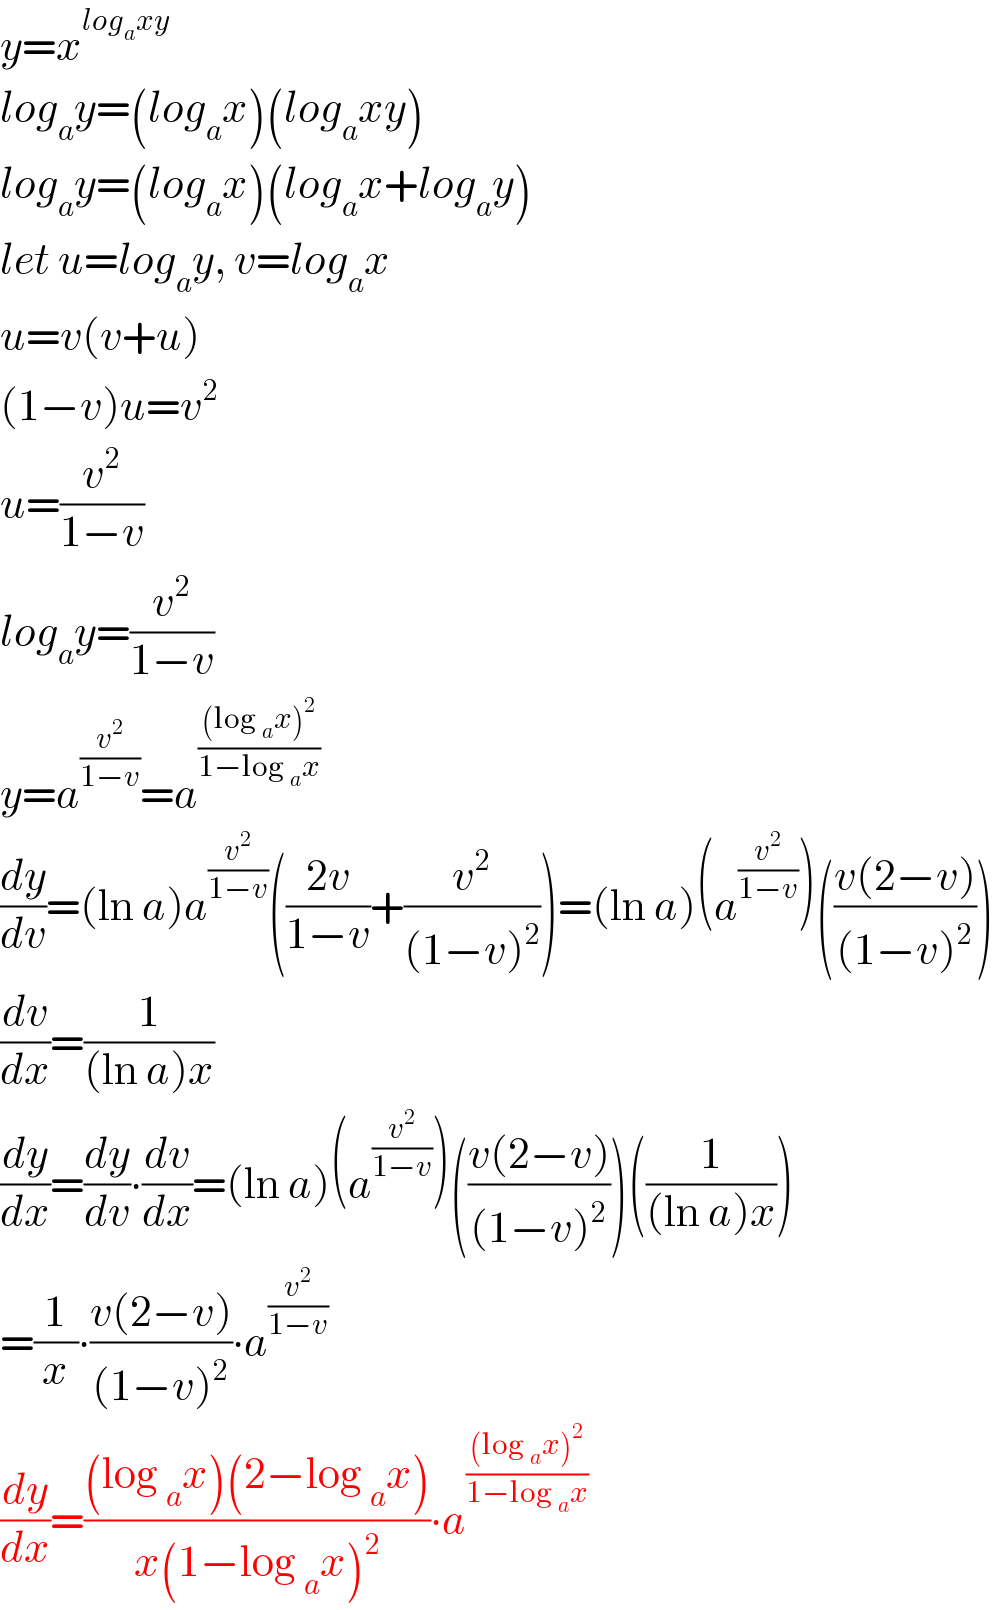 y=x^(log_a xy)   log_a y=(log_a x)(log_a xy)  log_a y=(log_a x)(log_a x+log_a y)  let u=log_a y, v=log_a x  u=v(v+u)  (1−v)u=v^2   u=(v^2 /(1−v))  log_a y=(v^2 /(1−v))  y=a^(v^2 /(1−v)) =a^(((log _a x)^2 )/(1−log _a x))   (dy/dv)=(ln a)a^(v^2 /(1−v)) (((2v)/(1−v))+(v^2 /((1−v)^2 )))=(ln a)(a^(v^2 /(1−v)) )(((v(2−v))/((1−v)^2 )))  (dv/dx)=(1/((ln a)x))  (dy/dx)=(dy/dv)∙(dv/dx)=(ln a)(a^(v^2 /(1−v)) )(((v(2−v))/((1−v)^2 )))((1/((ln a)x)))  =(1/x)∙((v(2−v))/((1−v)^2 ))∙a^(v^2 /(1−v))   (dy/dx)=(((log _a x)(2−log _a x))/(x(1−log _a x)^2 ))∙a^(((log _a x)^2 )/(1−log _a x))   